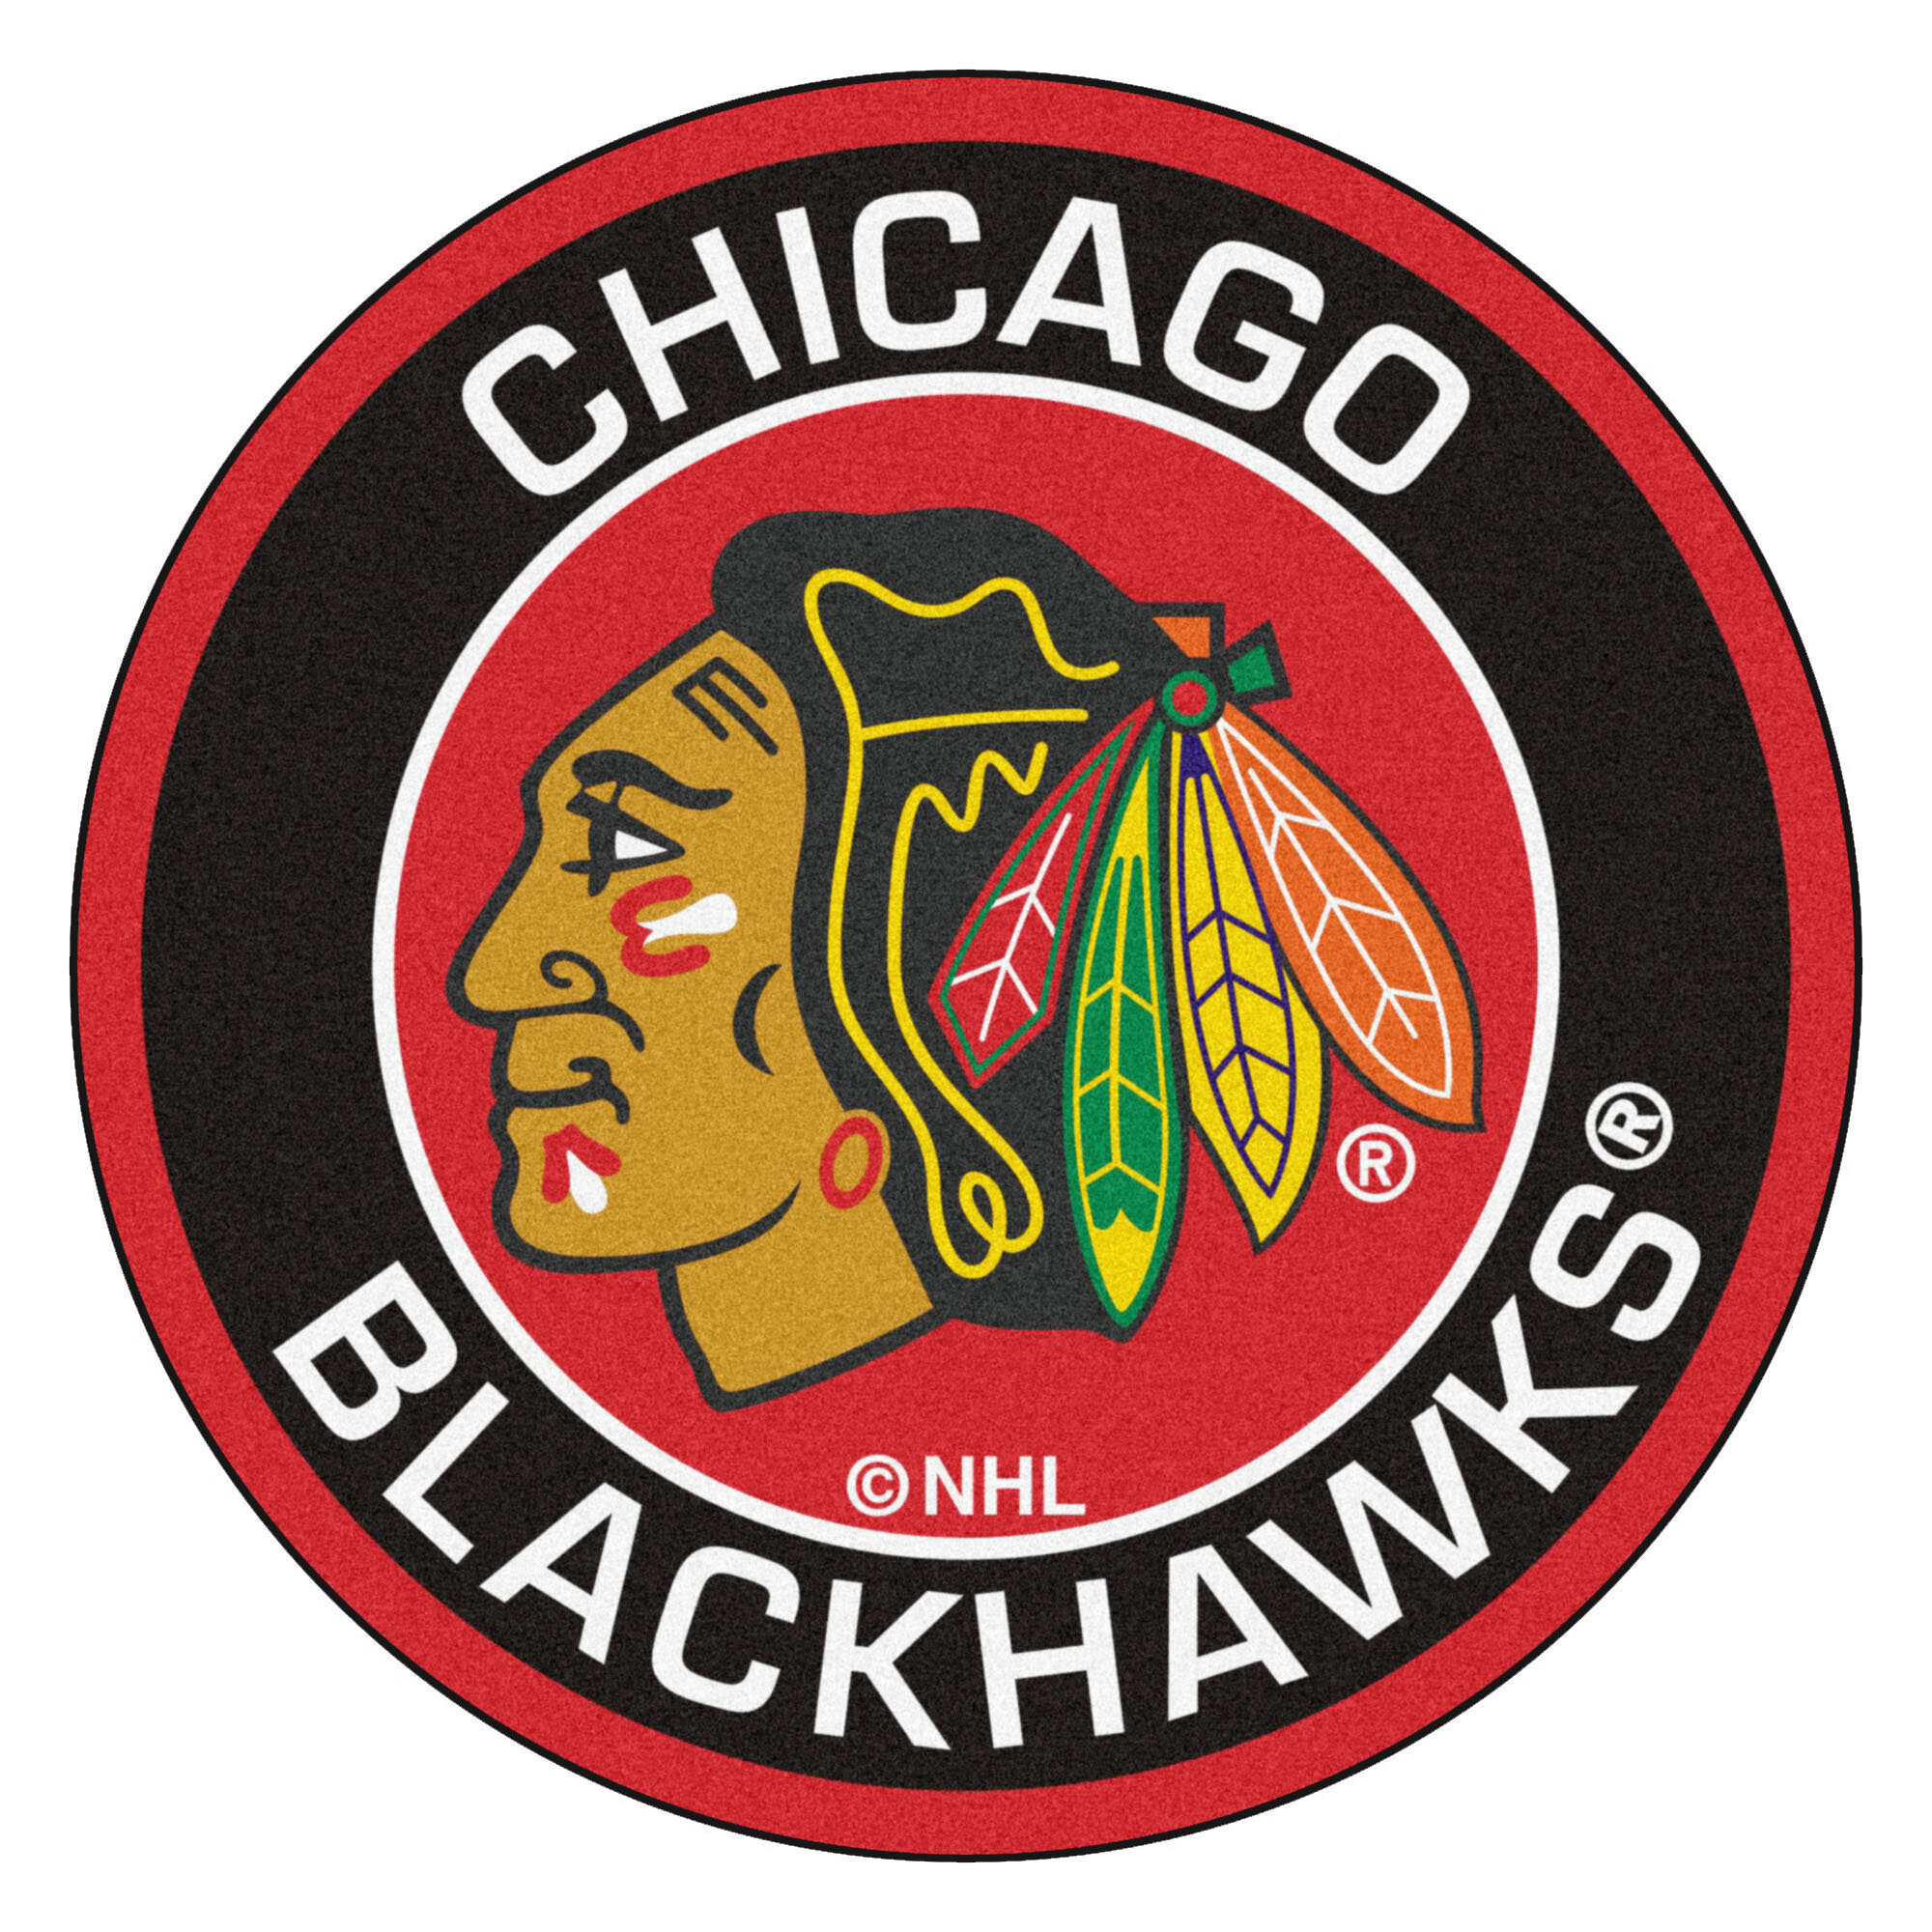 Image of the Chicago Blackhawks emblem